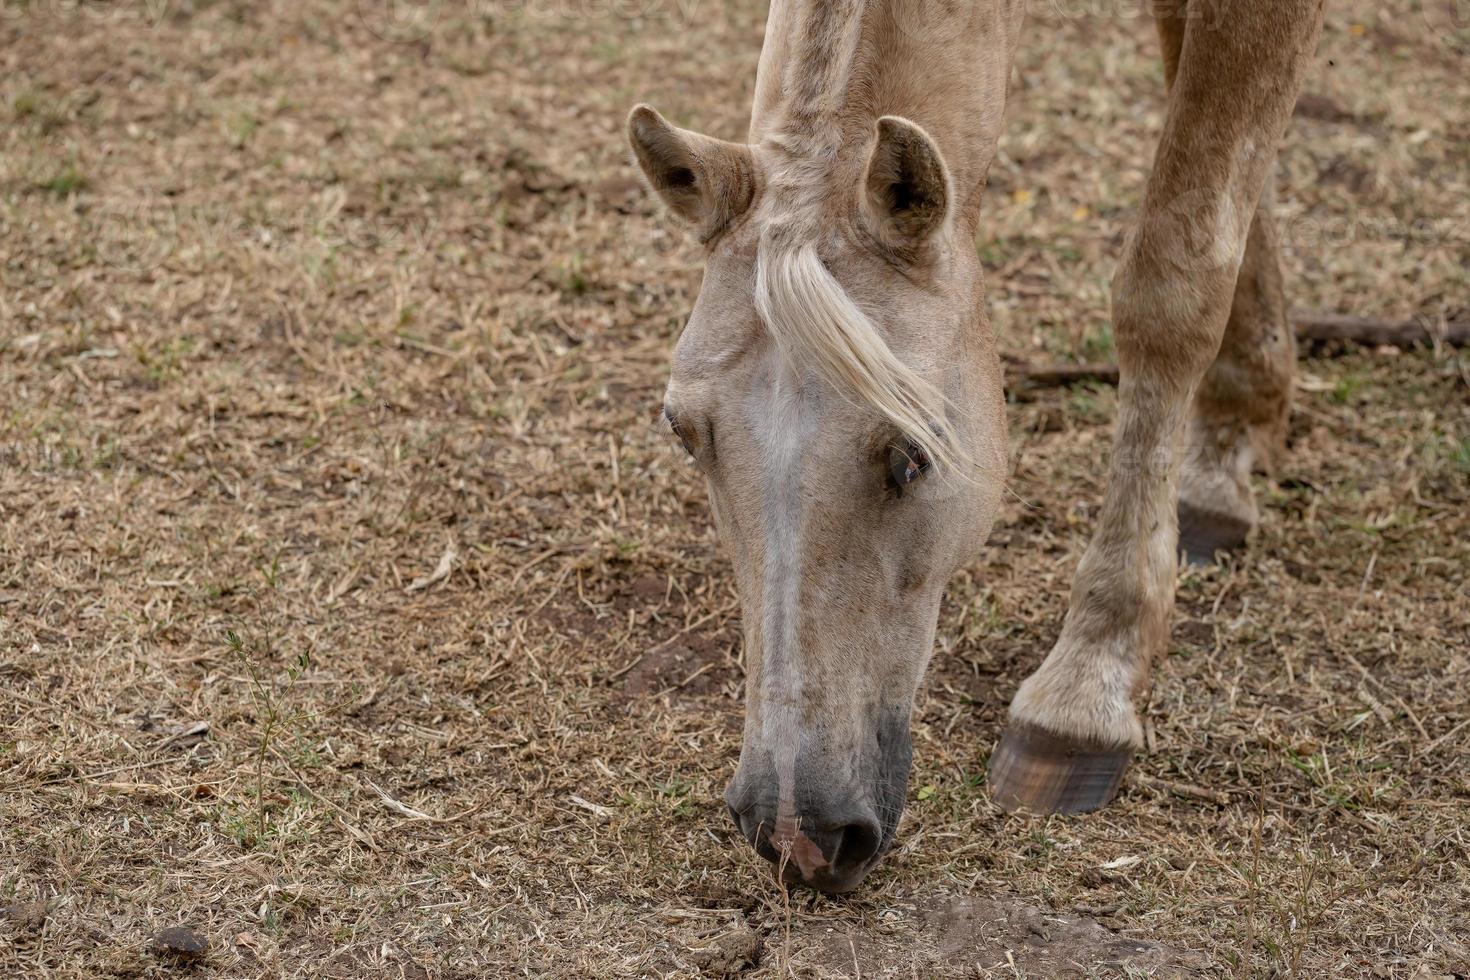 häst i en brasiliansk gård foto